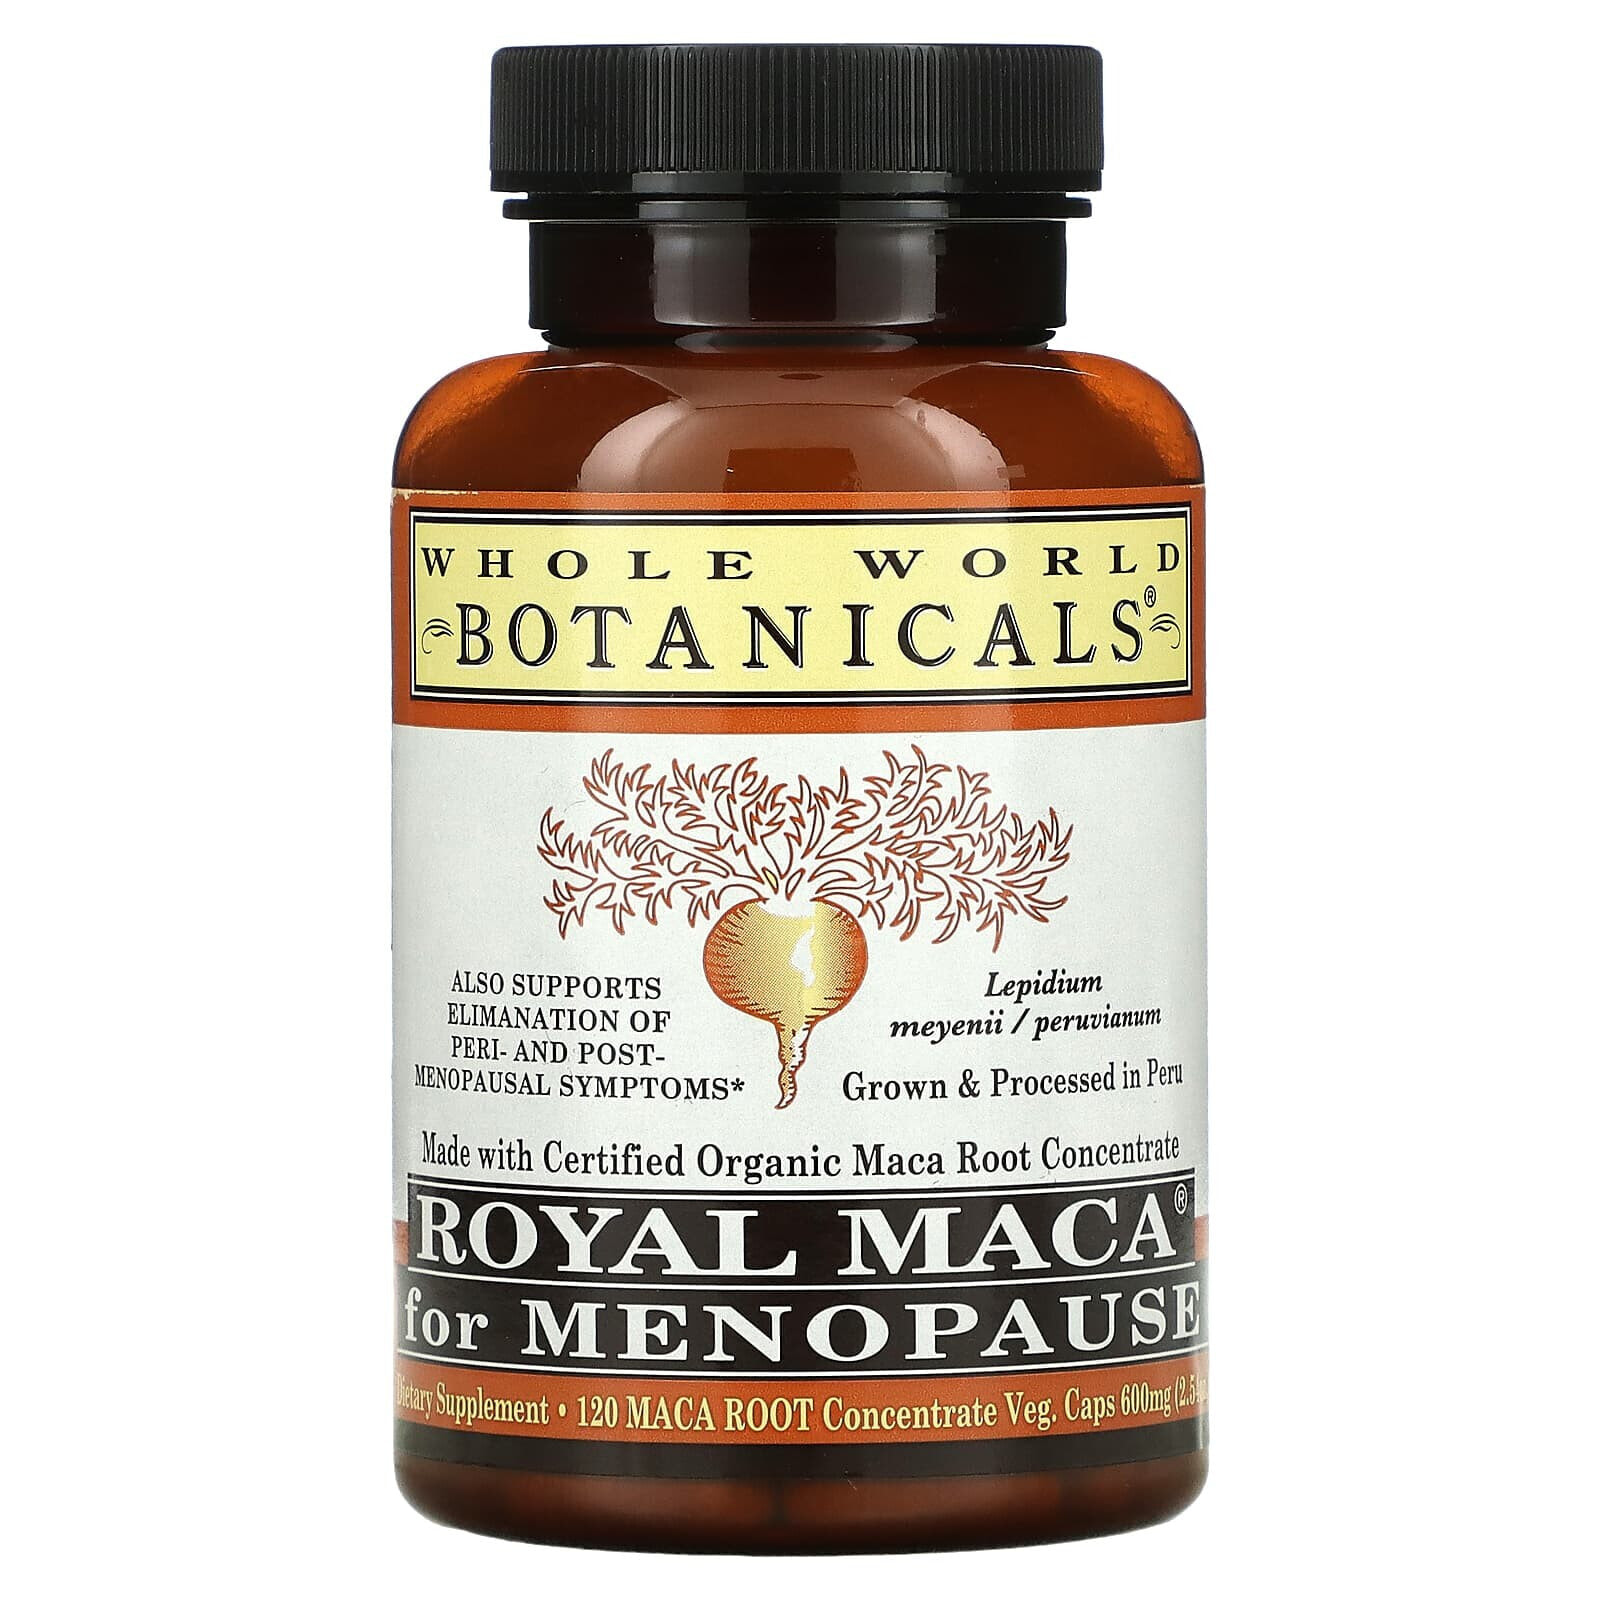 Вхоле Ворлд Ботаникалс, Royal Maca®, королевская мака для приема при менопаузе, 500 мг, 120 вегетарианских капсул